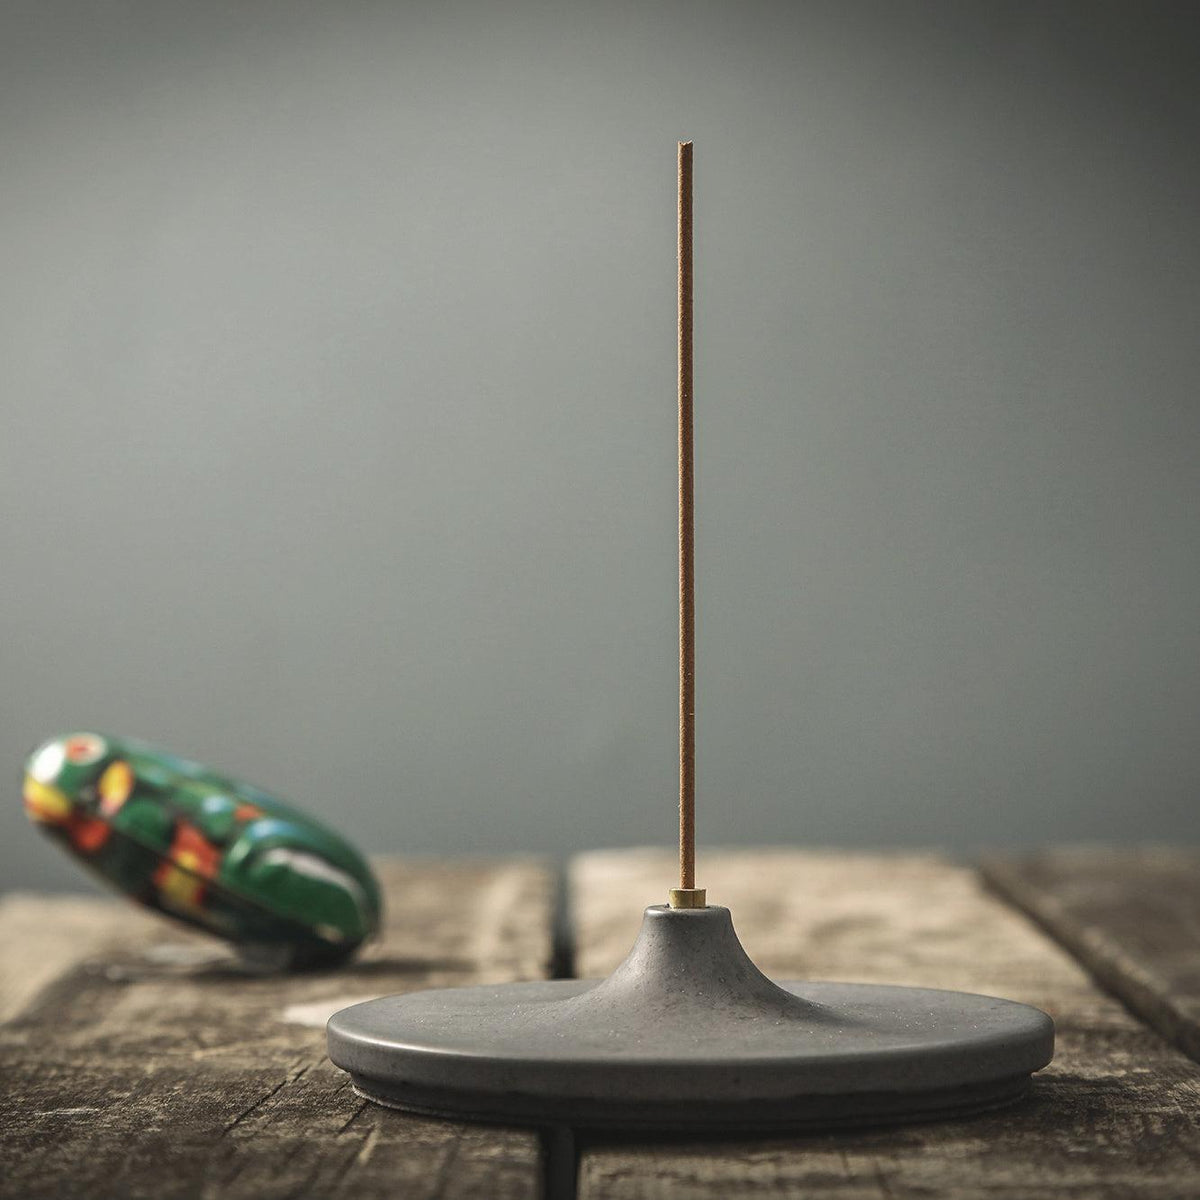 Disk incense burner on a table